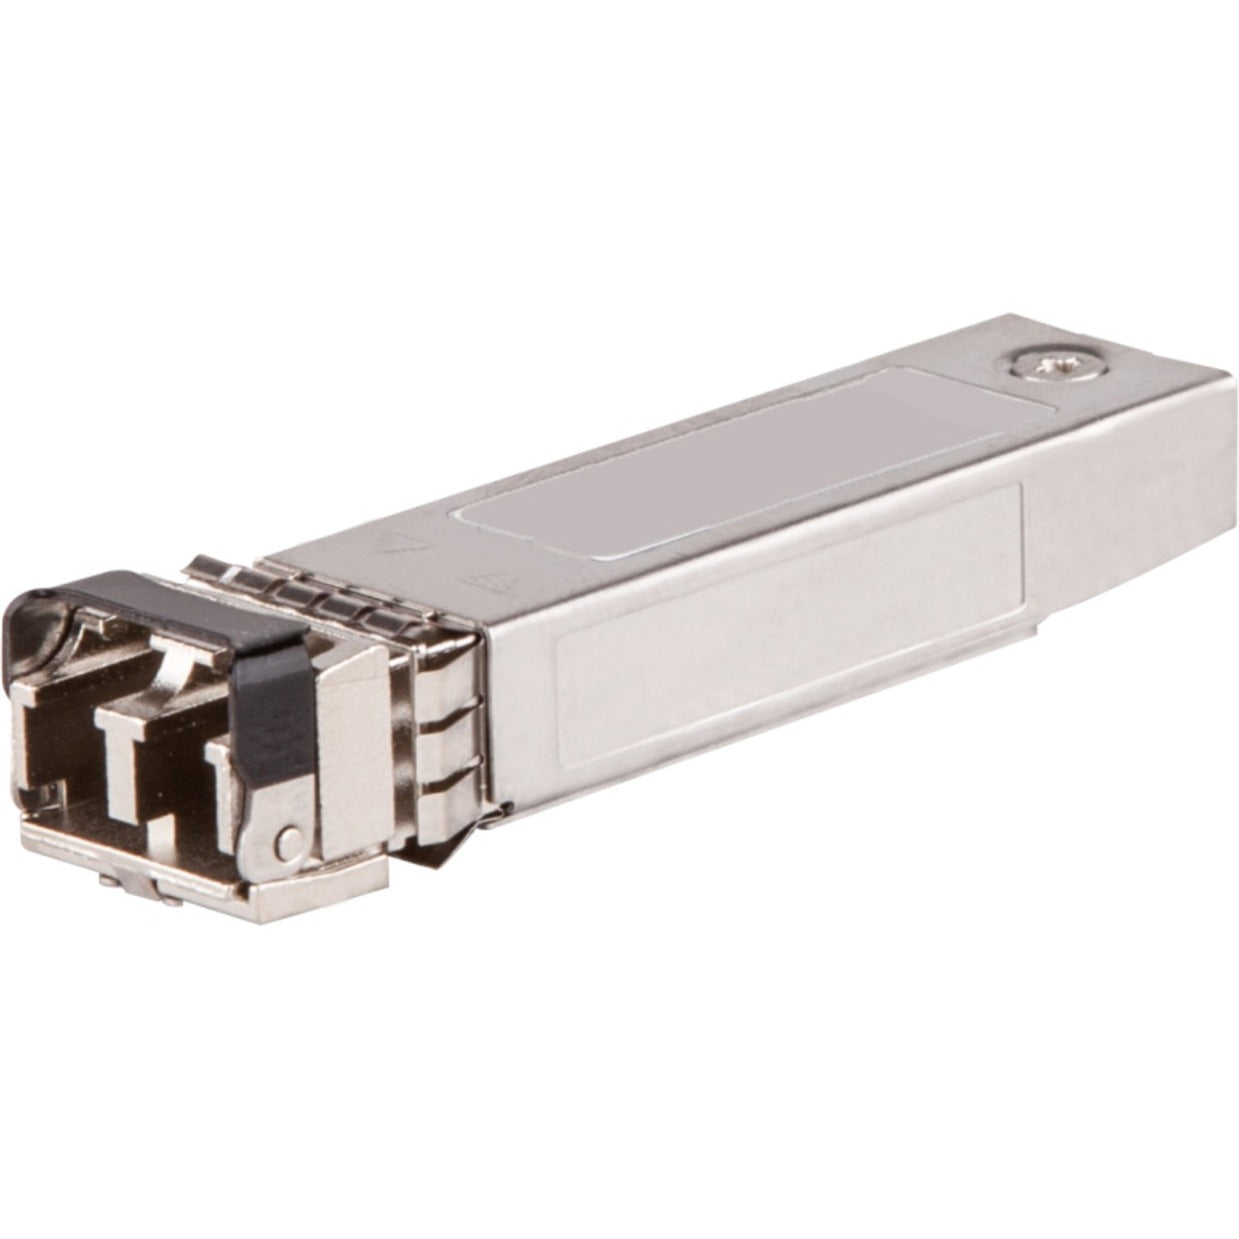 Aruba J4859D 1G SFP LC LX 10km SMF Transceiver, Gigabit Ethernet, Single-mode, Optical Fiber